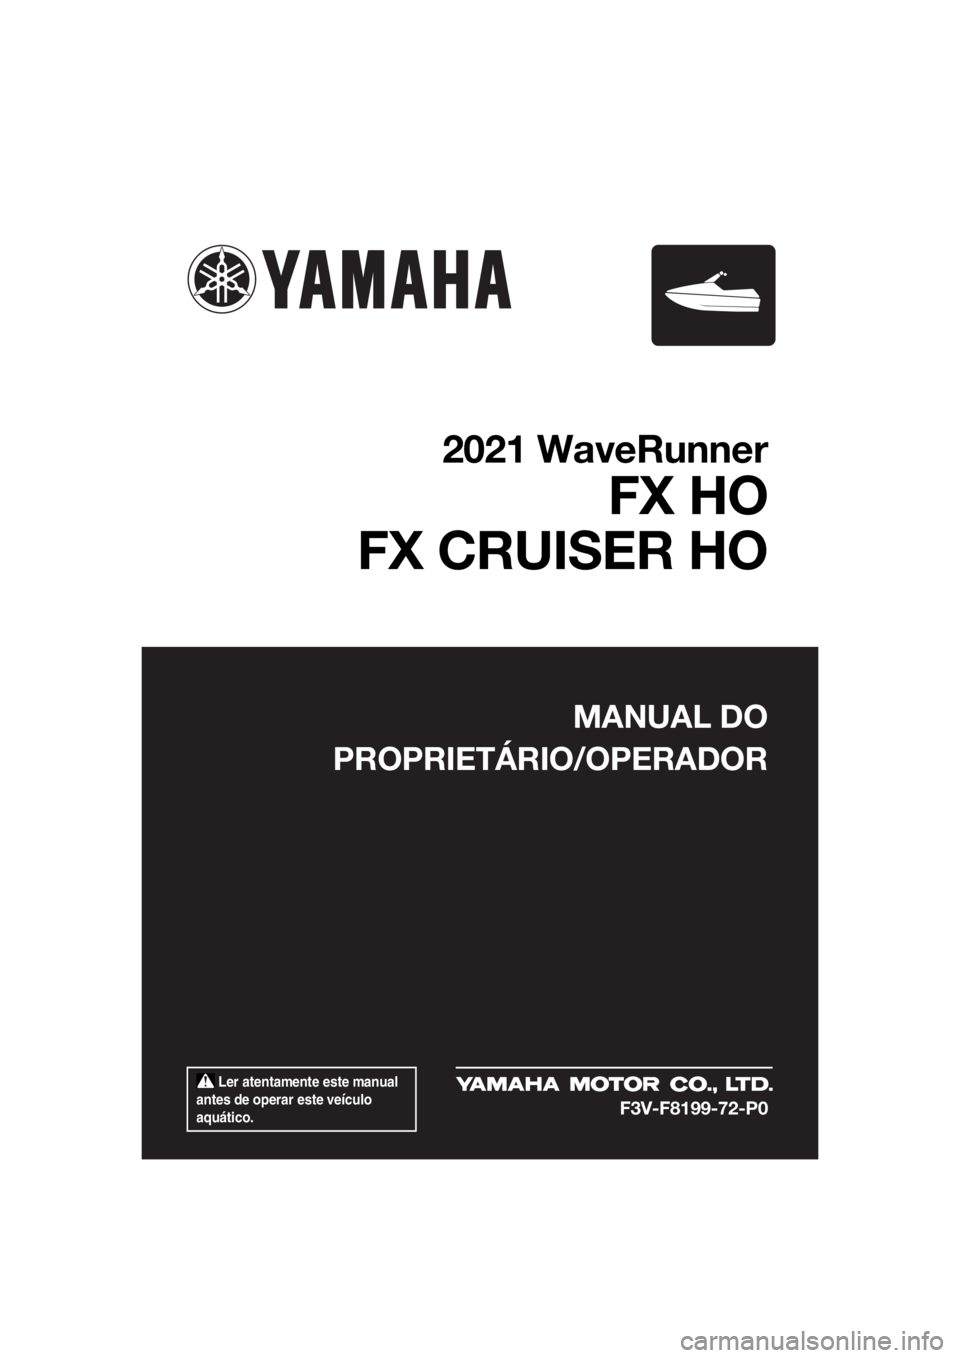 YAMAHA FX HO 2021  Manual de utilização (in Portuguese)  Ler atentamente este manual 
antes de operar este veículo 
aquático.
MANUAL DO
PROPRIETÁRIO/OPERADOR
2021 WaveRunner
FX HO
FX CRUISER HO
F3V-F8199-72-P0
UF3V72P0.book  Page 1  Tuesday, June 16, 20